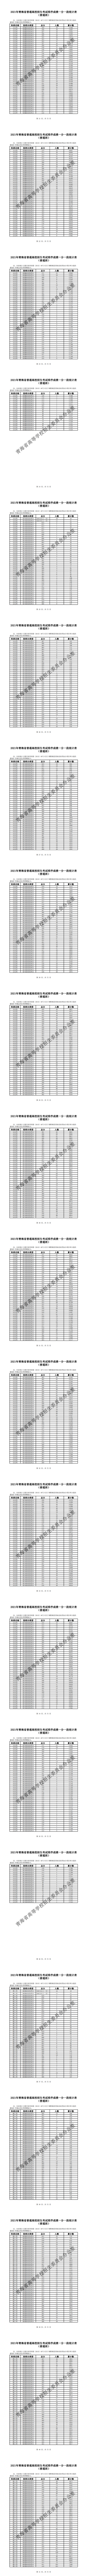 附件1：2021年青海省普通高校招生考试排序成绩一分一段统计表（普通班）_1.png